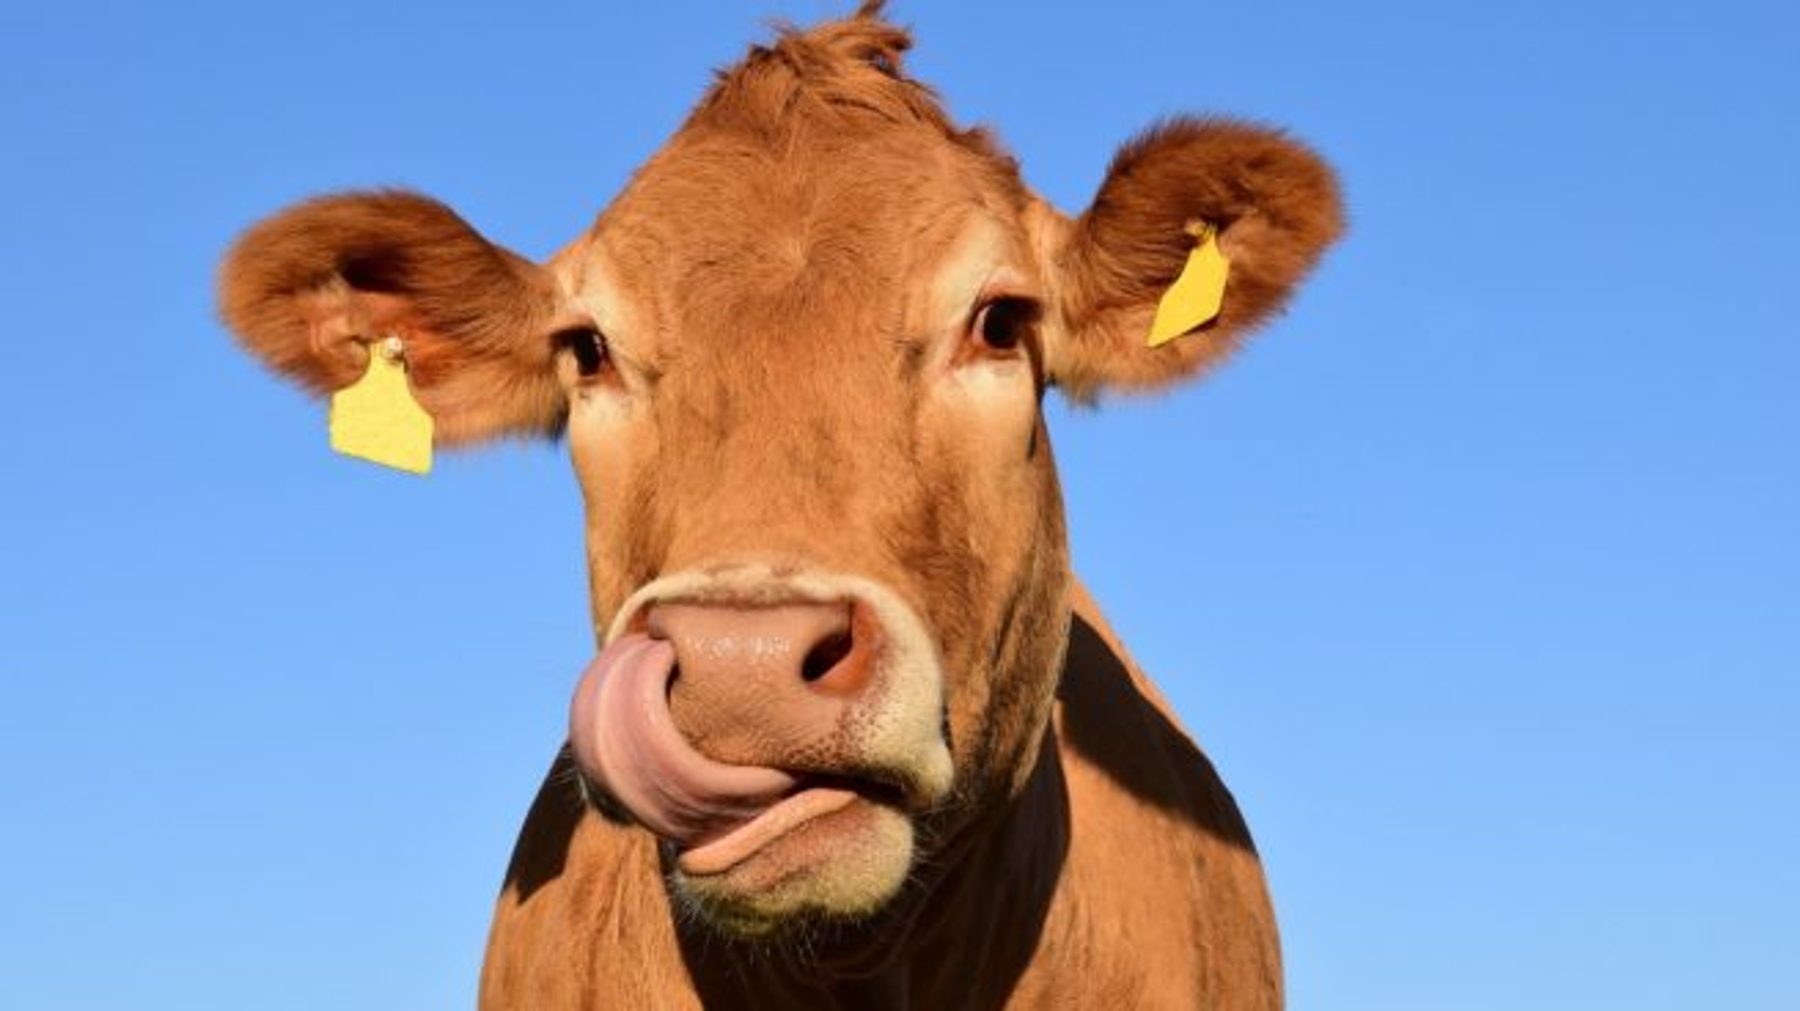 Concurso ‘La caca de la vaca’ en Bormujos: 750 € de premio y el excremento del animal como protagonista.